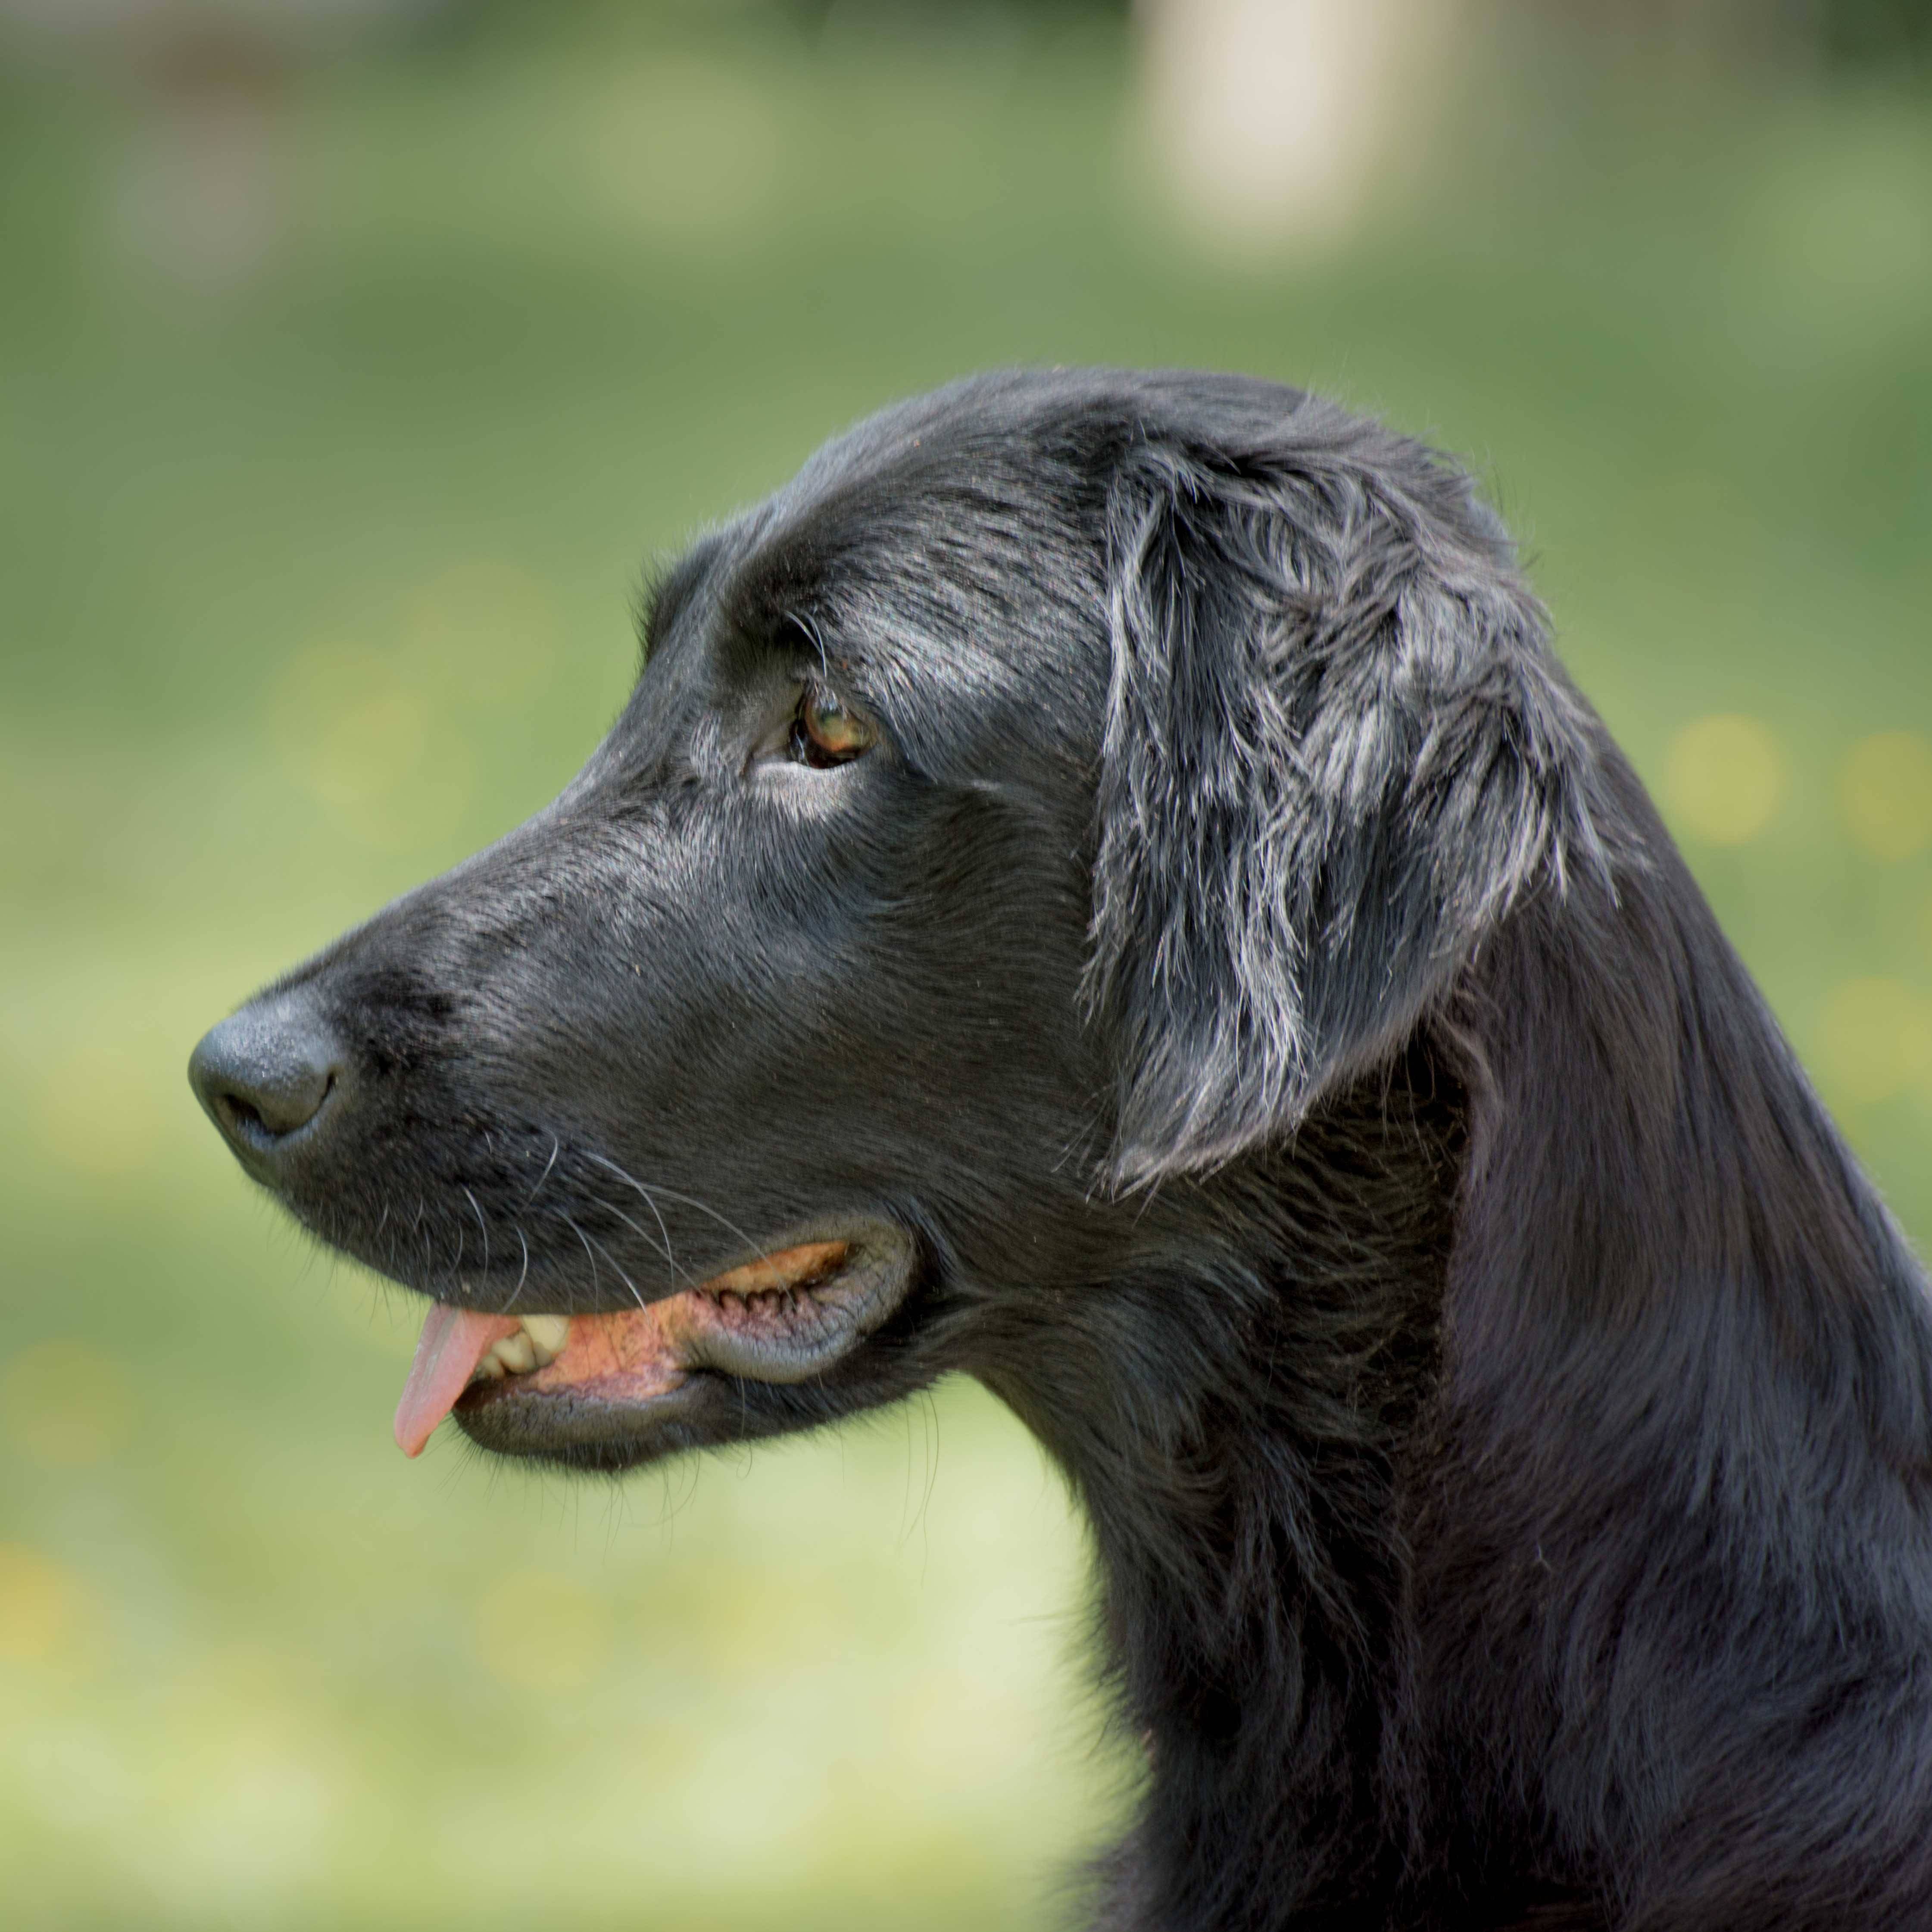 Лабрадор-ретривер: все о собаке, фото, описание породы, характер, цена